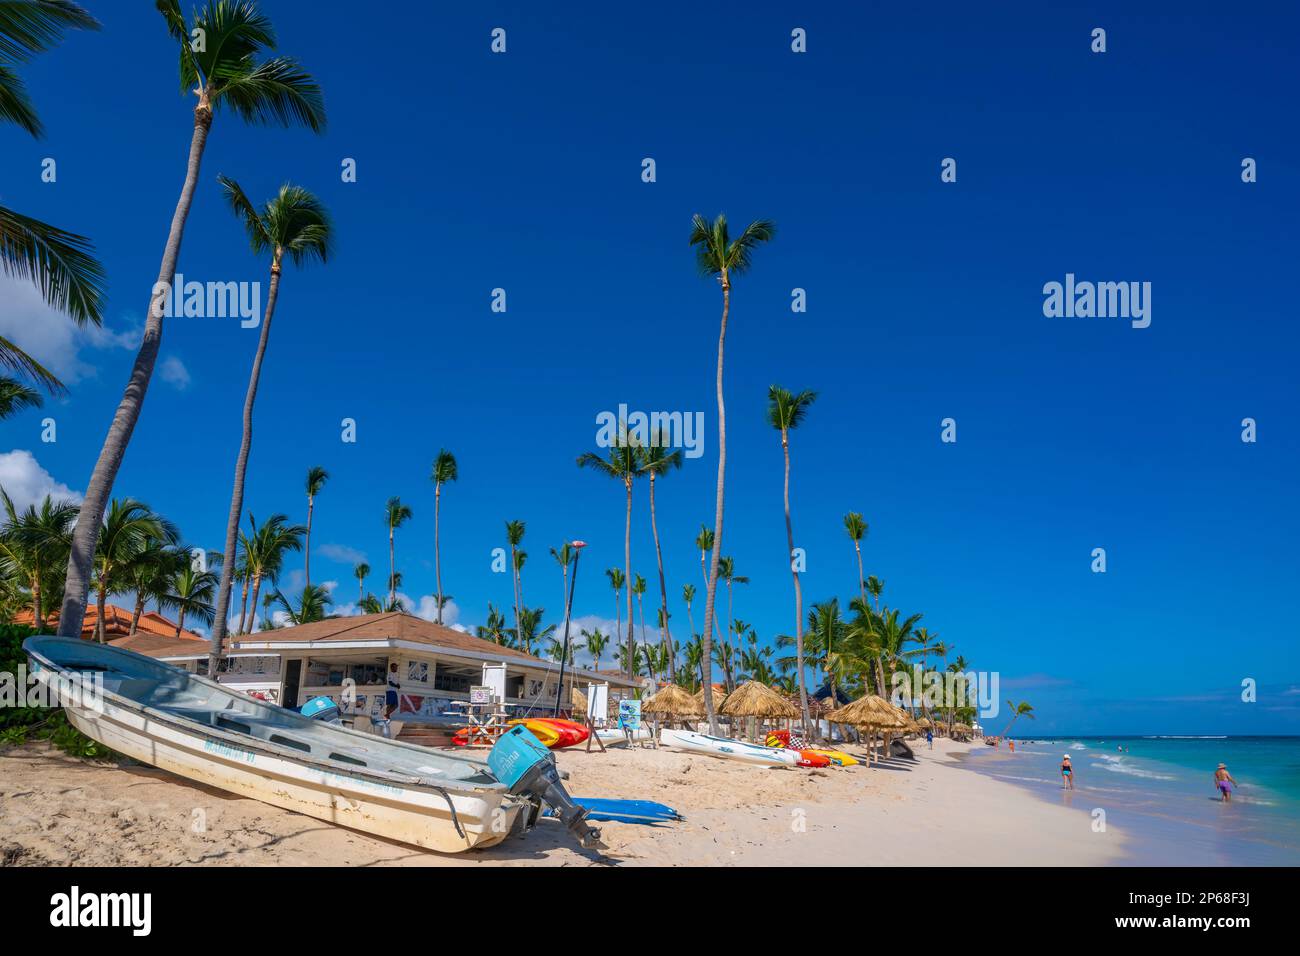 Vue sur le bateau et les palmiers sur la plage de Bavaro, Punta Cana, République dominicaine, Antilles, Caraïbes, Amérique centrale Banque D'Images